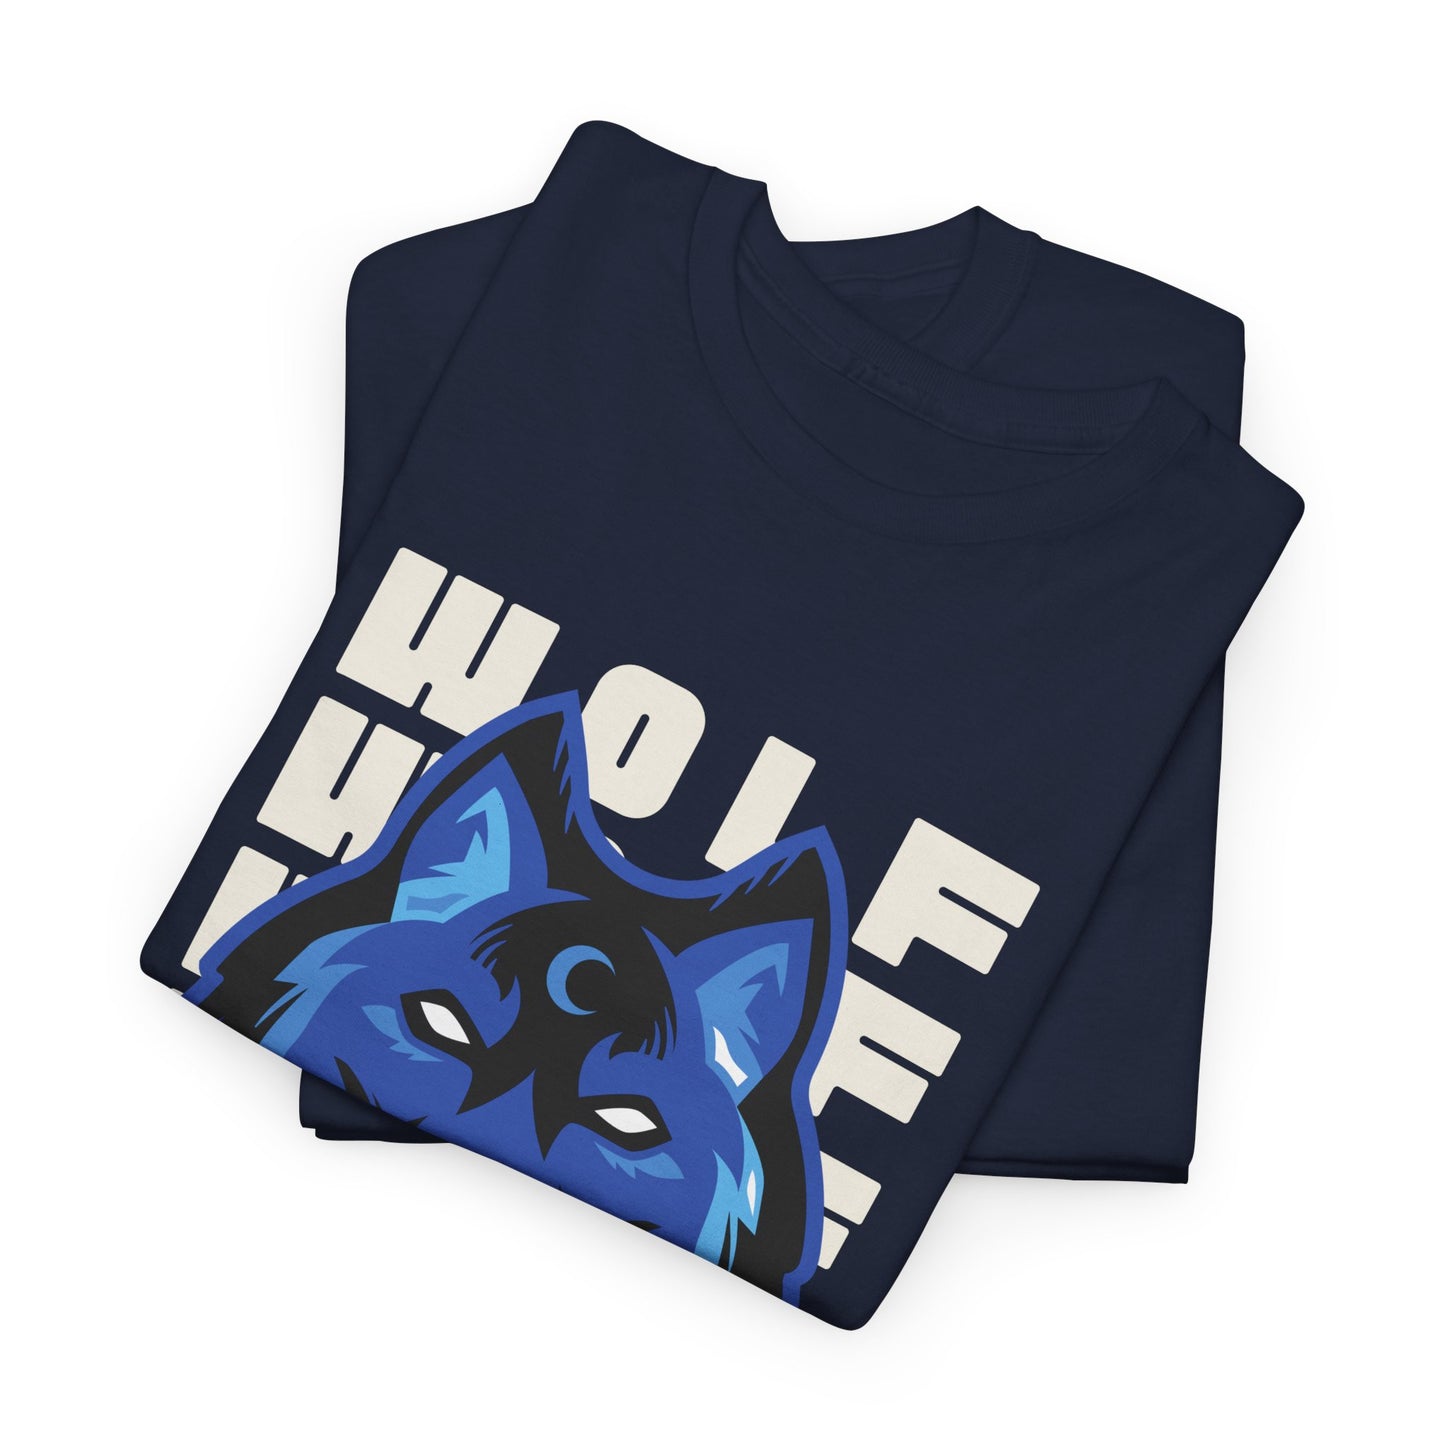 Unisex Heavy Cotton Graphic design (Wolf) T-shirt